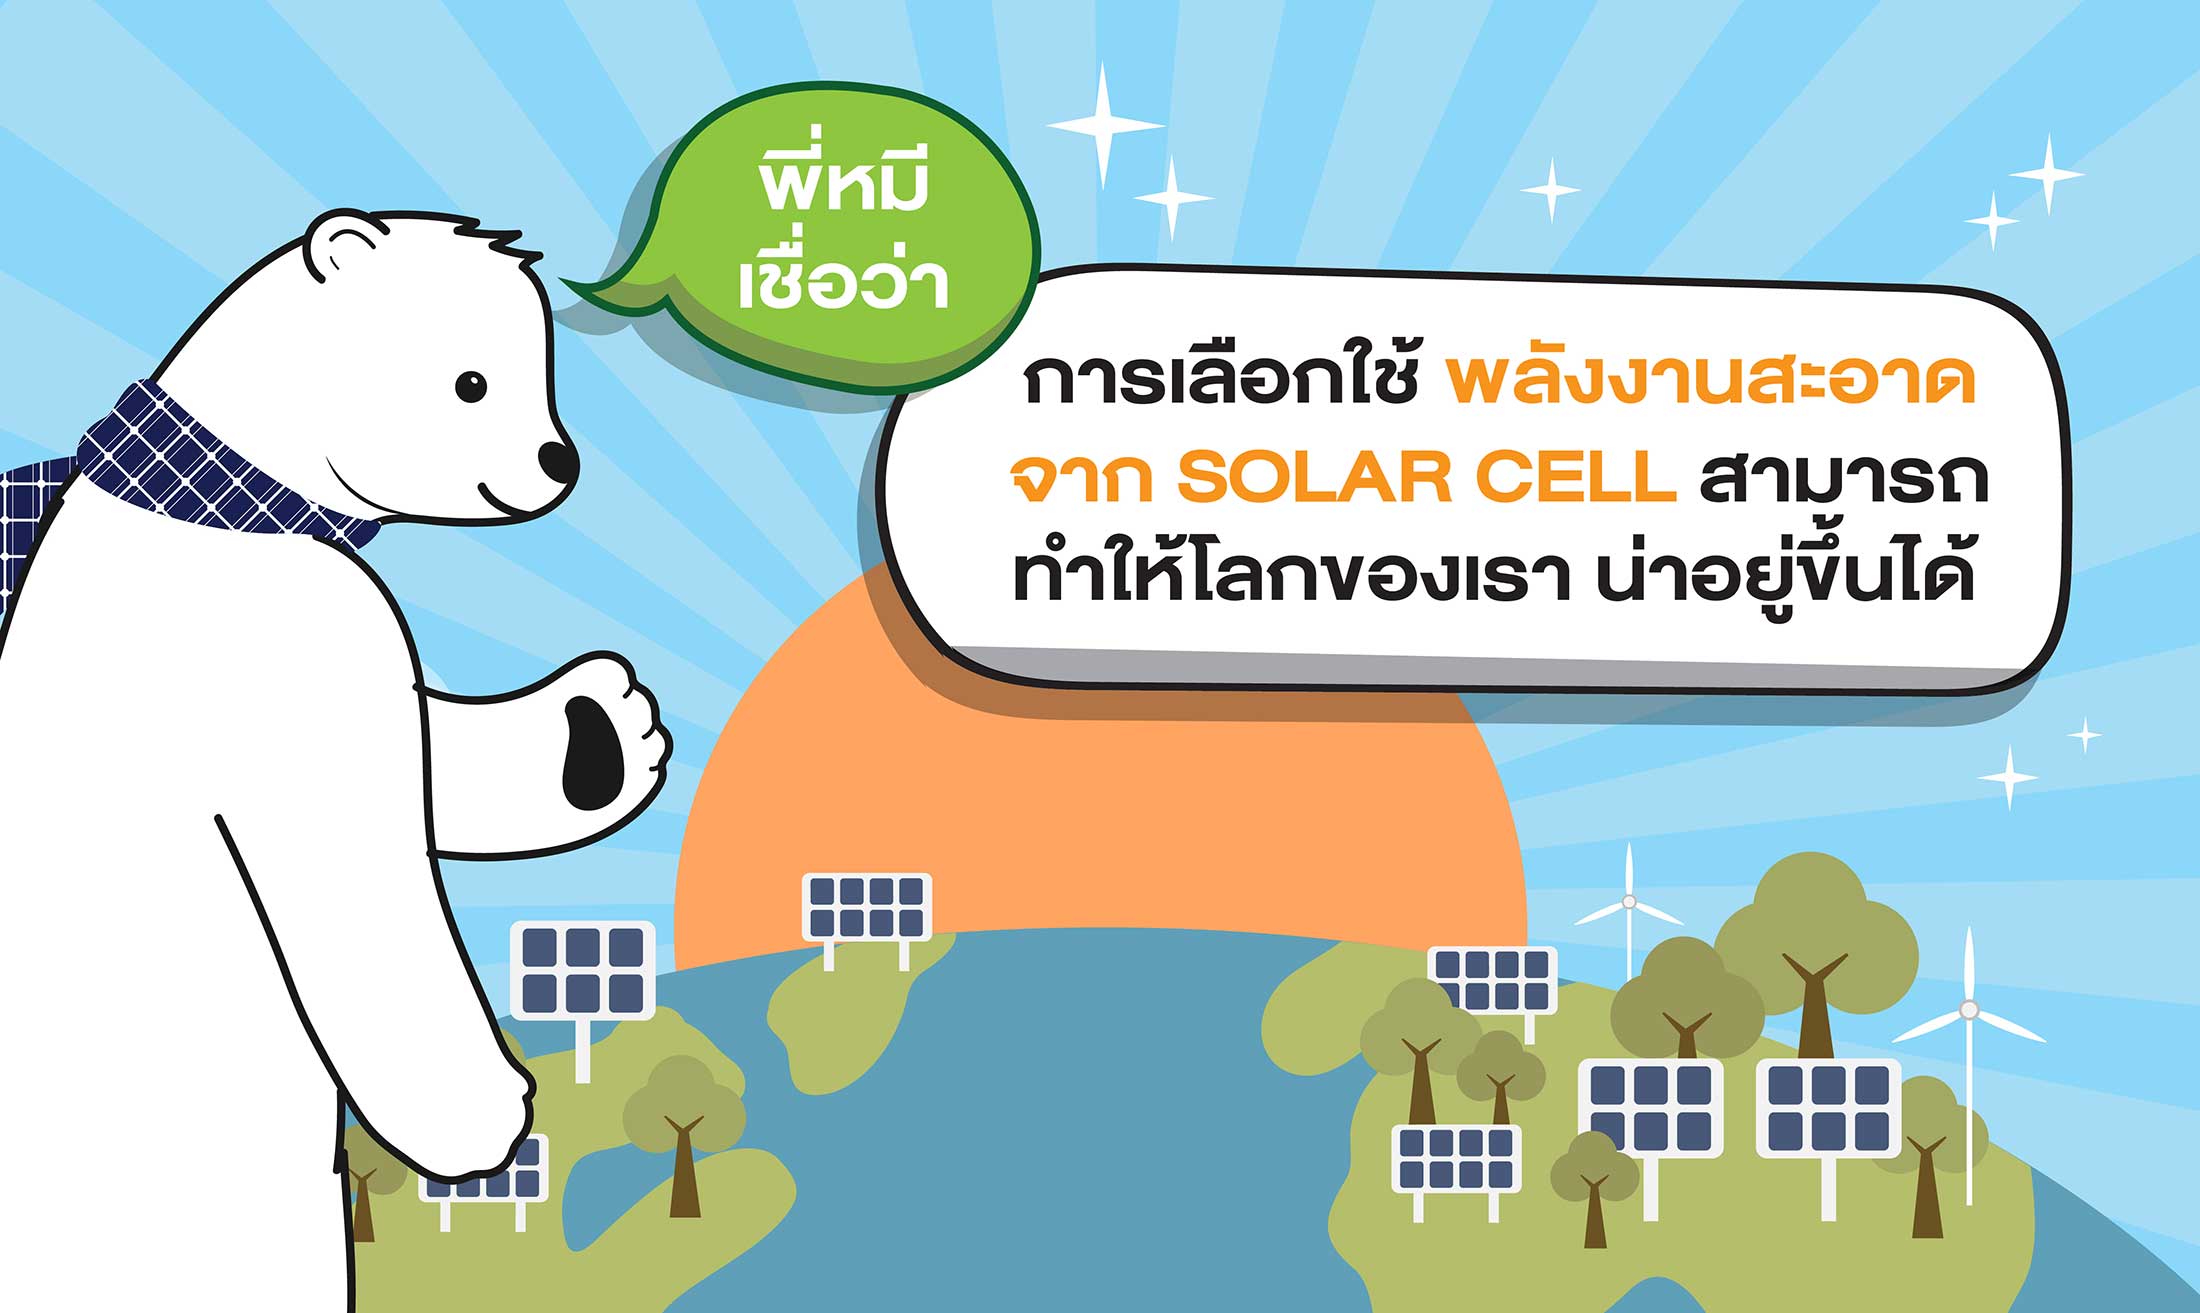 ประโยชน์ของโซล่าเซลล์ 5 การเลือกใช้พลังงานสะอาด จาก SOLAR CELL ทำให้โลกของเราน่าอยู่ขึ้น